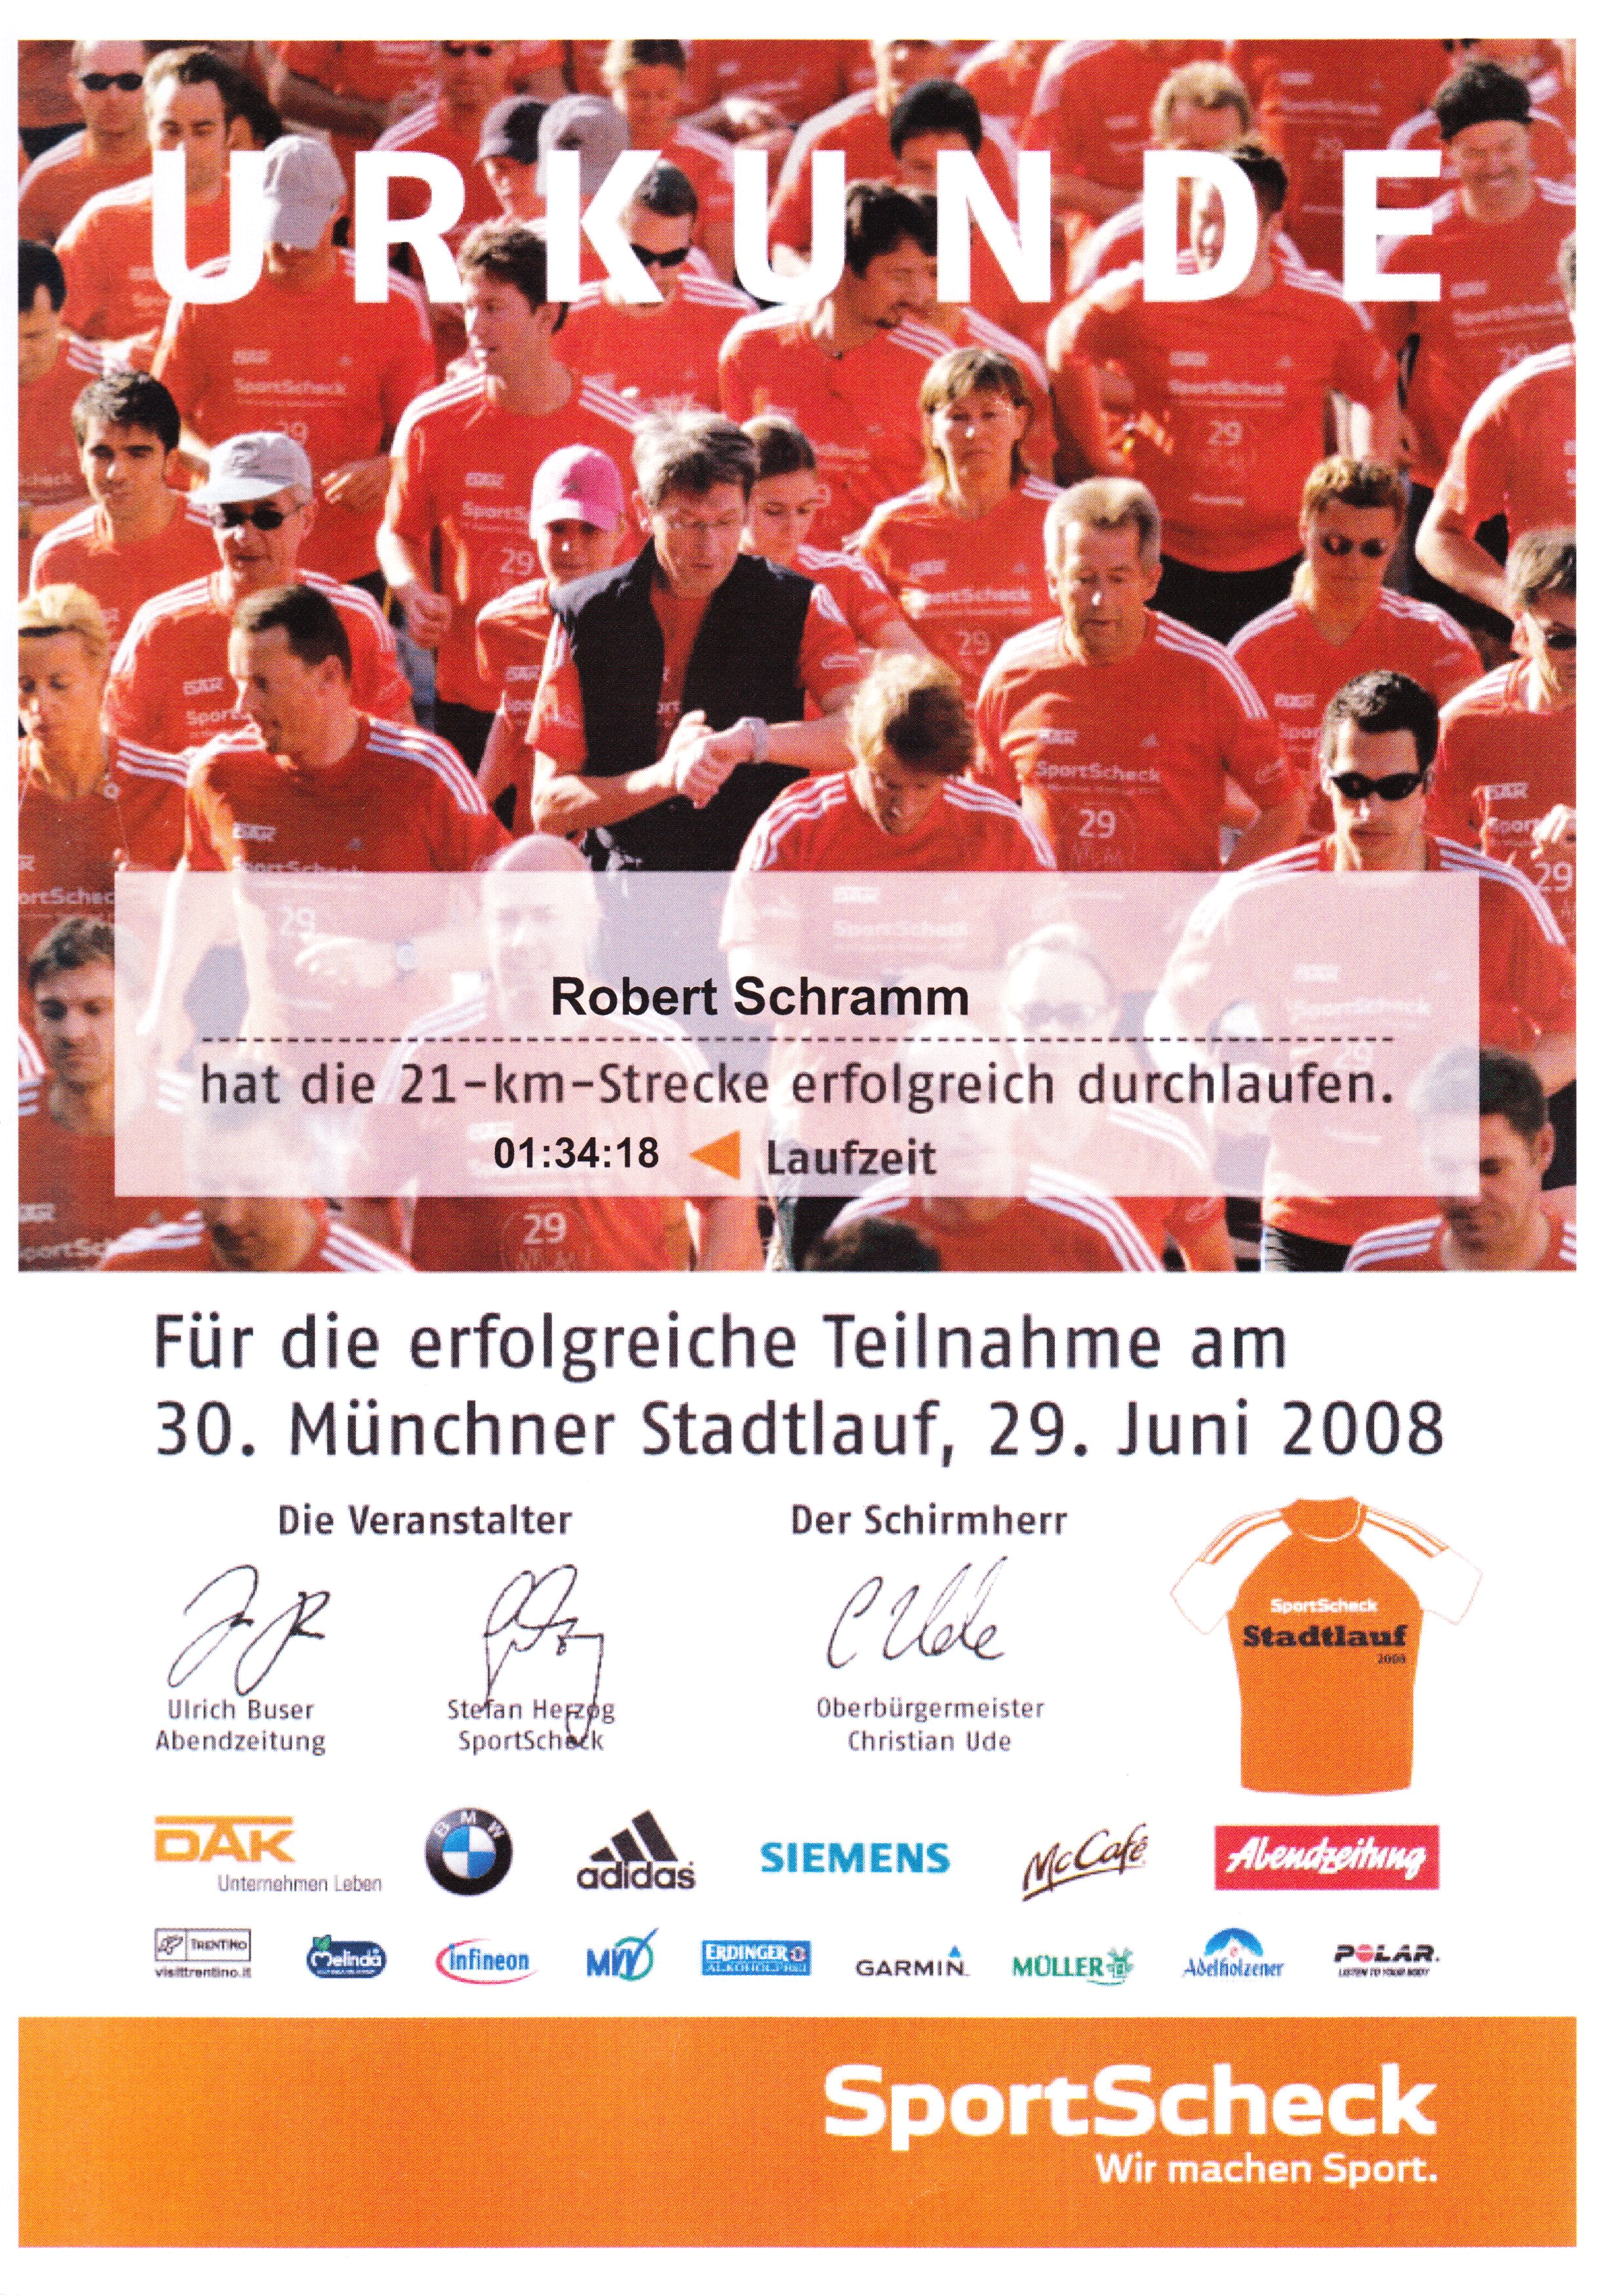 Urkunde-Stadtlauf-2008